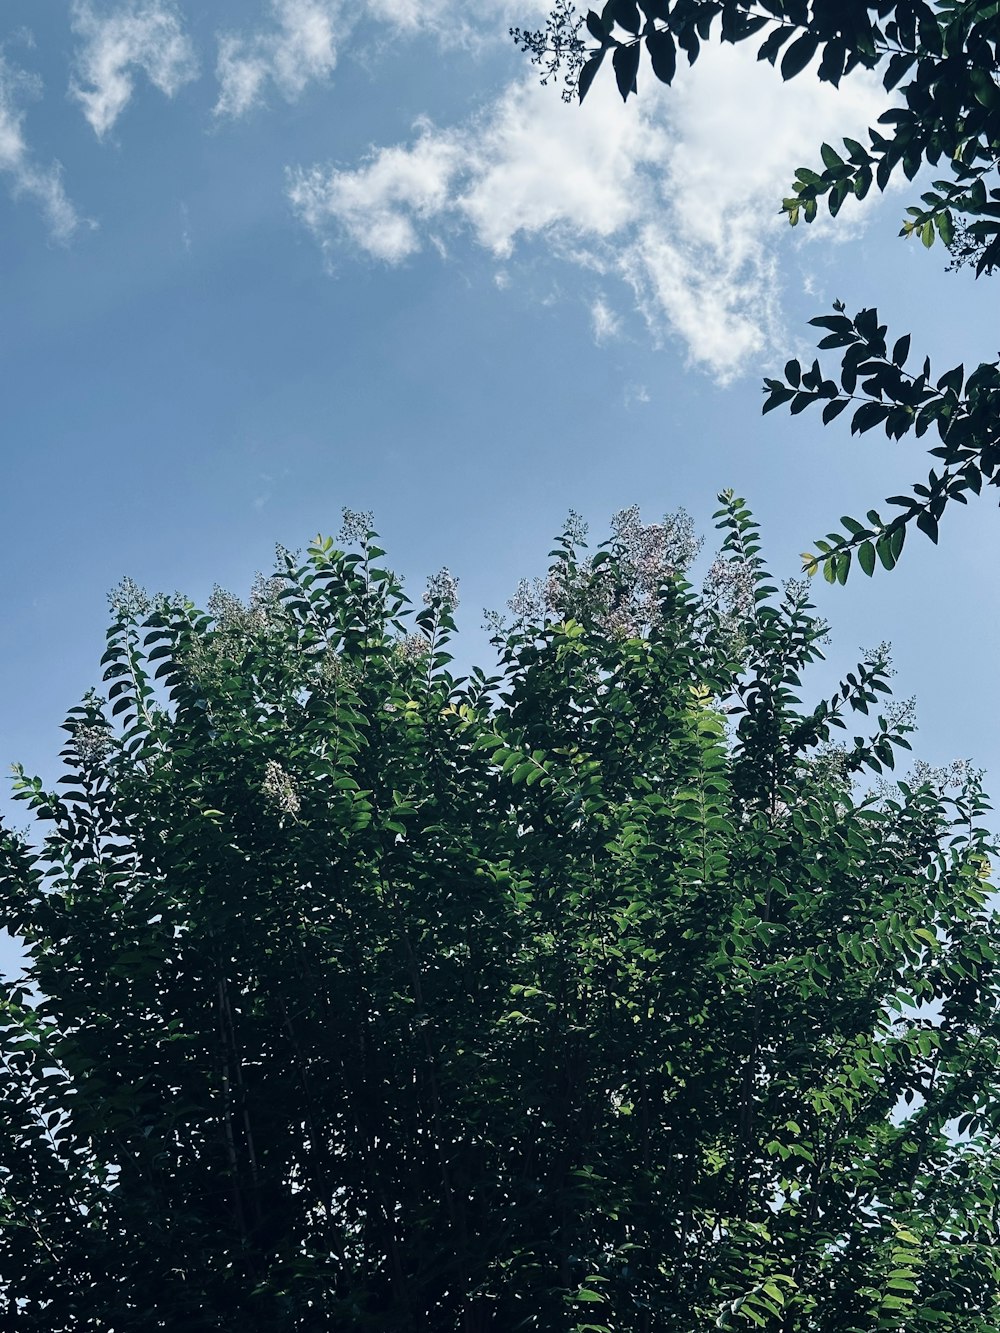 푸른 하늘 앞에 나뭇잎이 많은 큰 나무